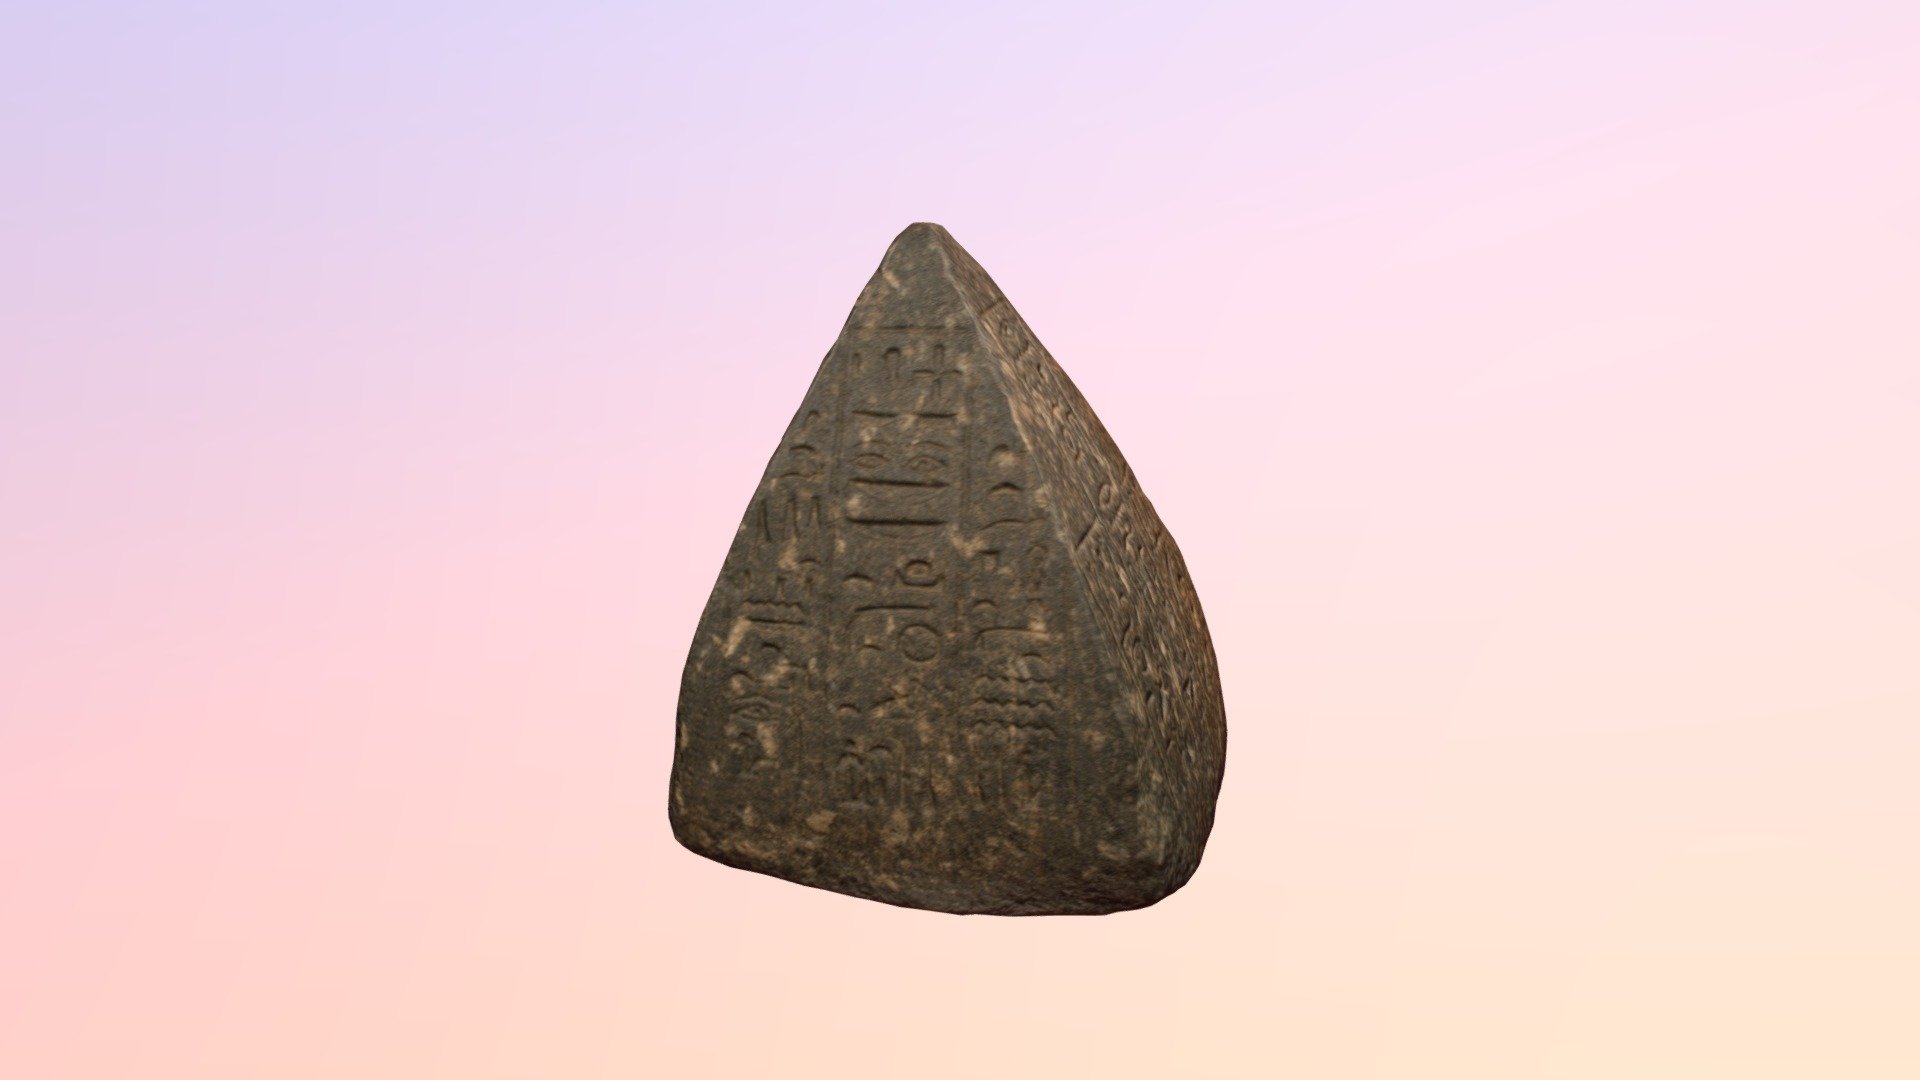 Pyramidion of Nefer-ron-pet